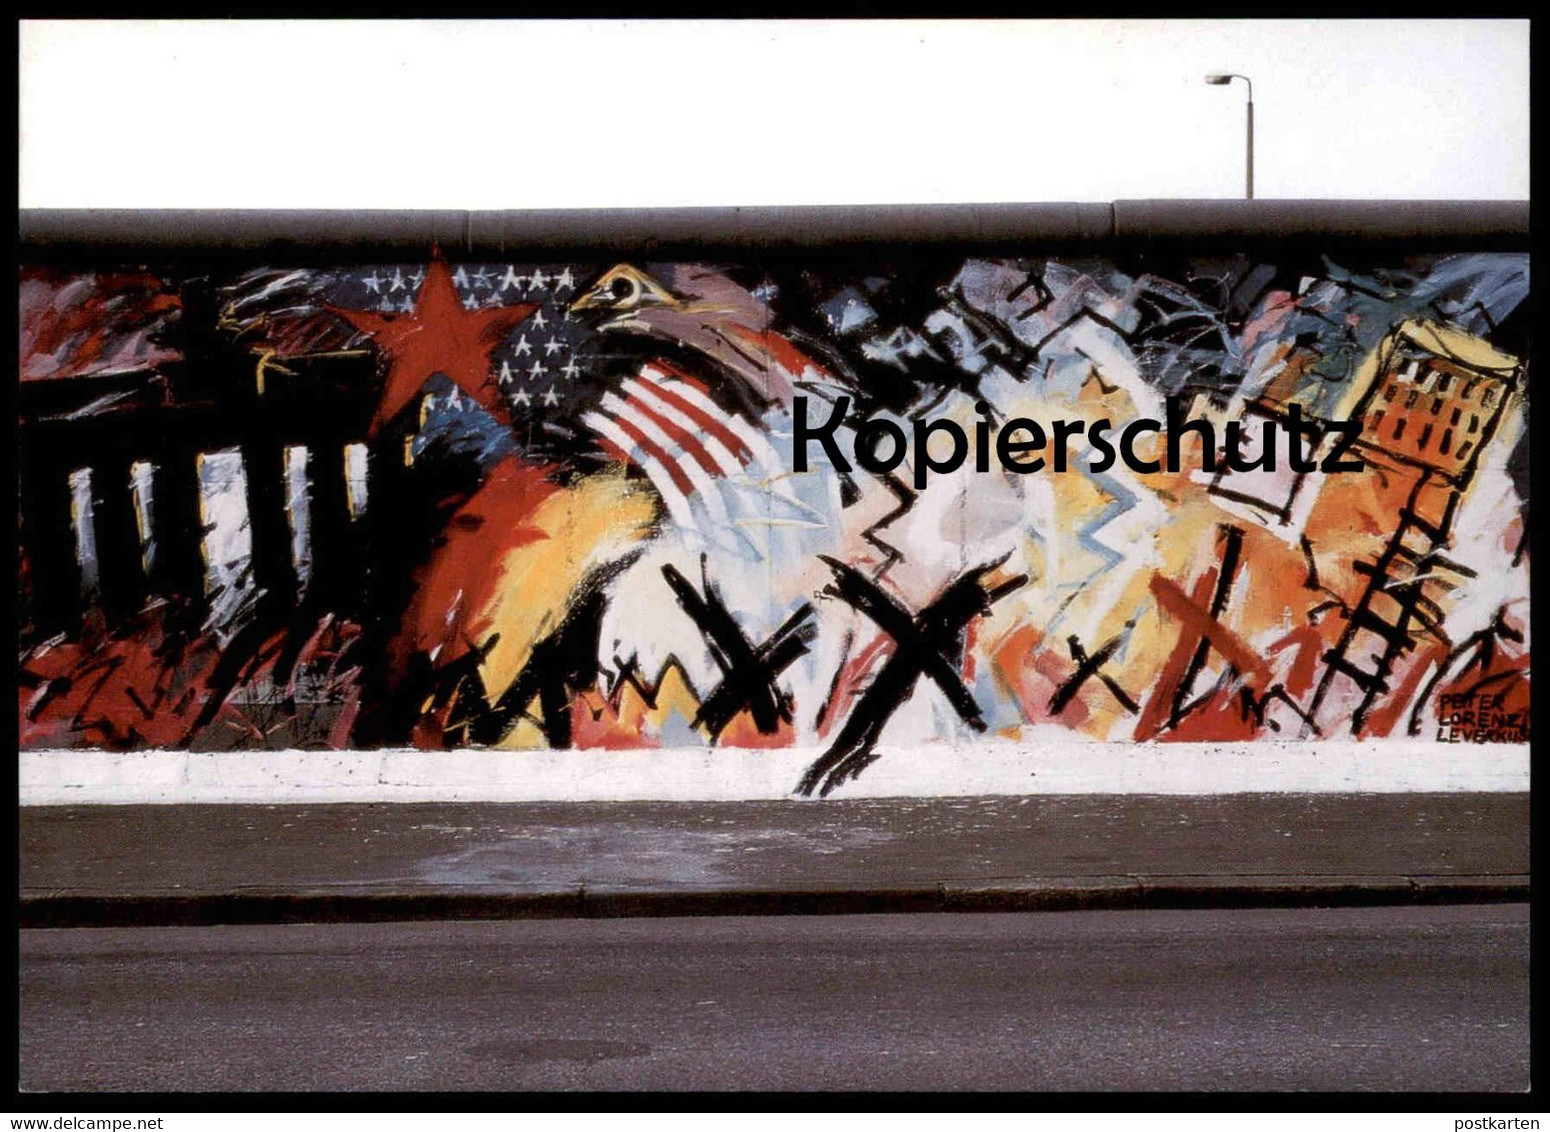 ÄLTERE POSTKARTE BERLINER MAUER THE WALL LE MUR BERLIN PETER LORENZ LEVERKUSEN ART GRAFFITI AMERICA Cpa Postcard - Berliner Mauer